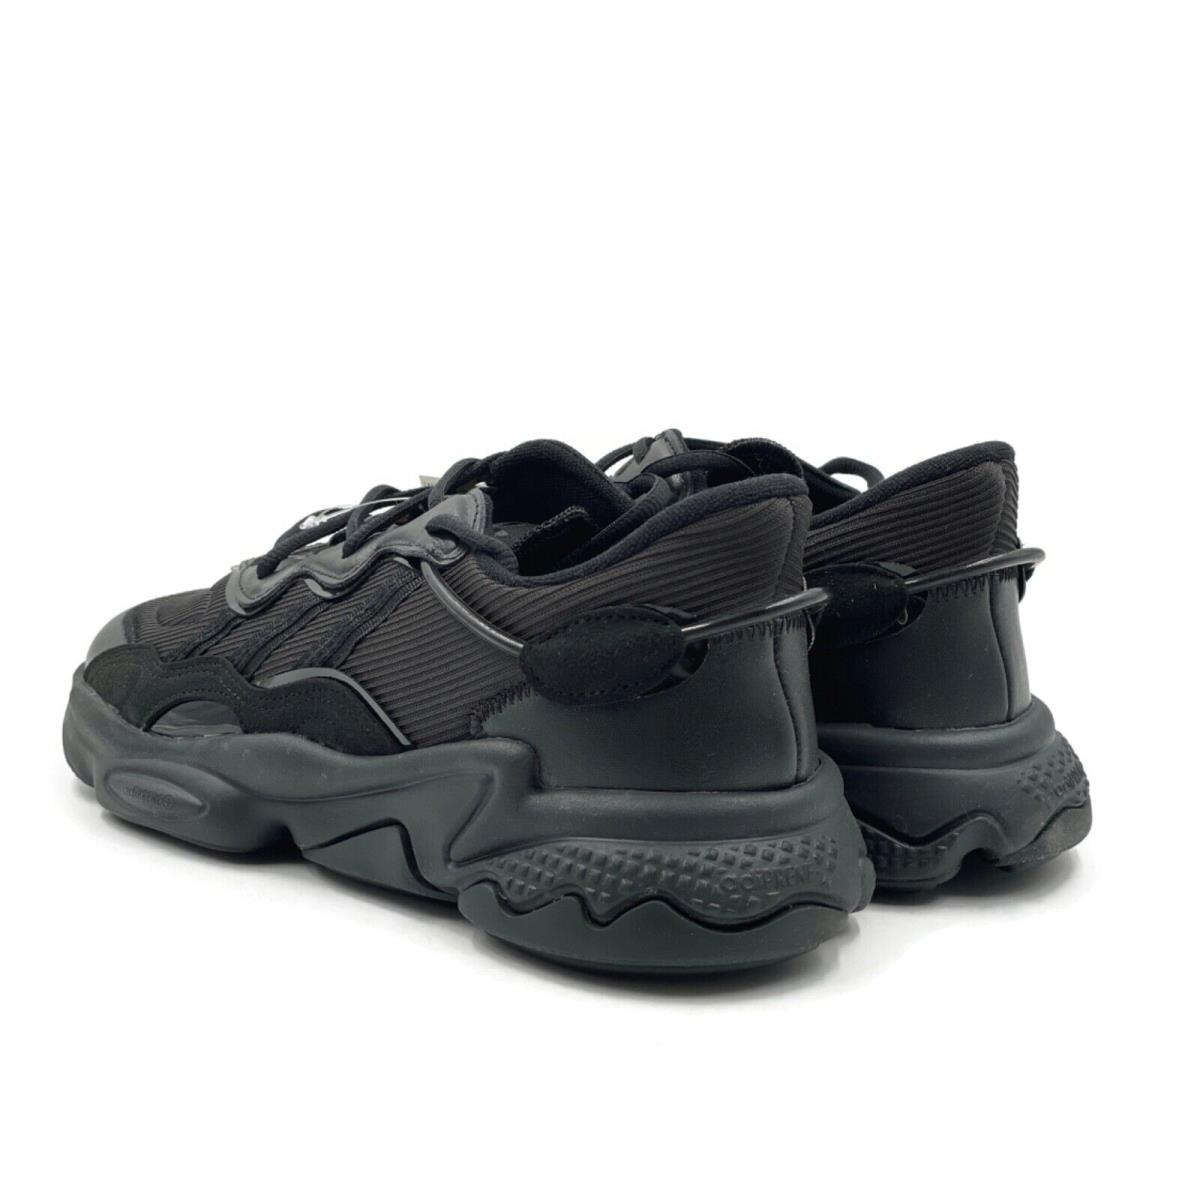 Adidas shoes Ozweego - Black 5